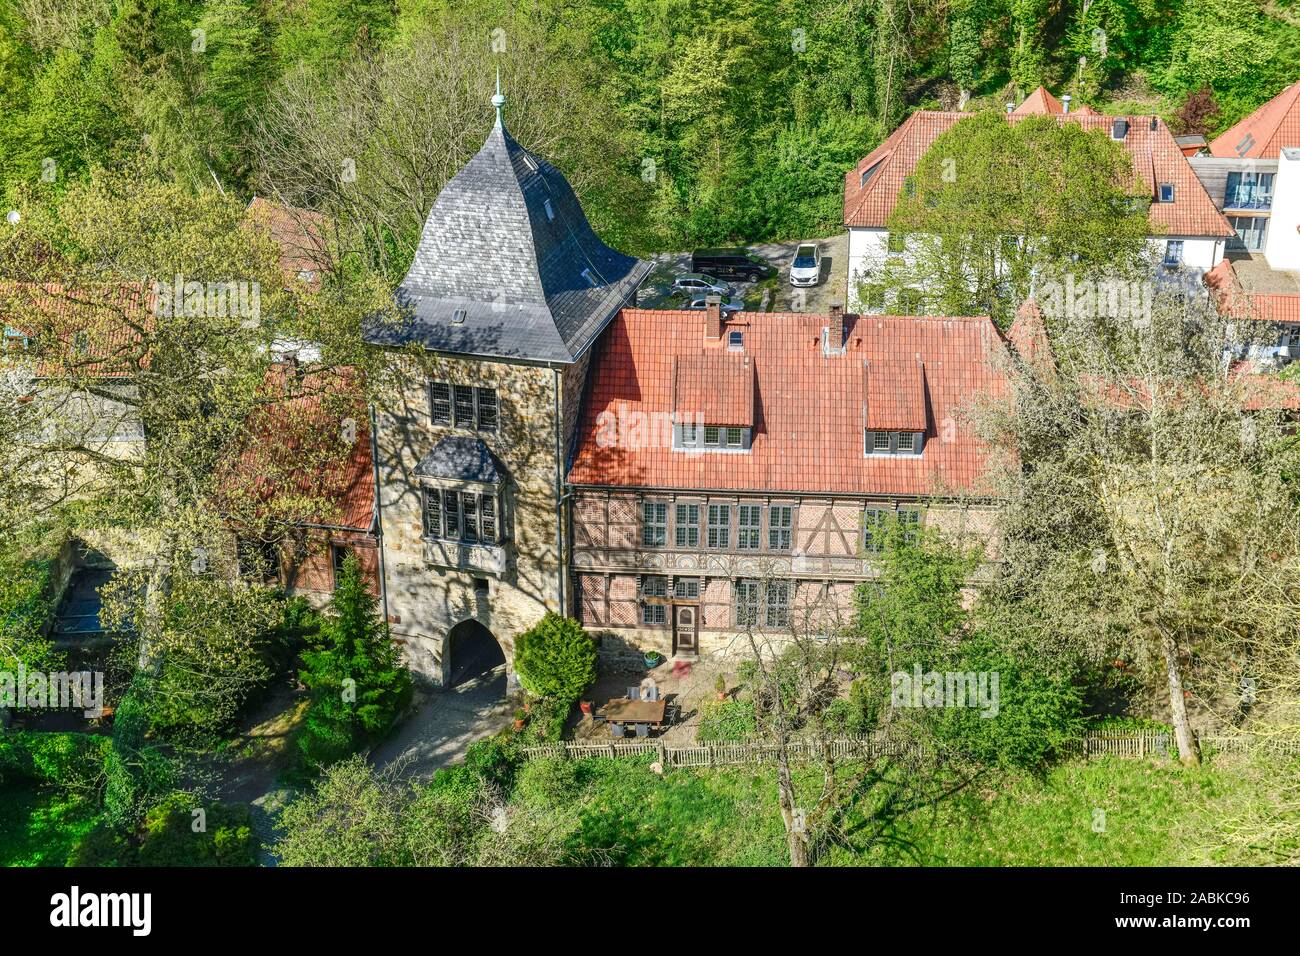 Torturm und Torhaus, Burg Schaumburg, Rinteln, Weserbergland, Niedersachsen, Deutschland Banque D'Images